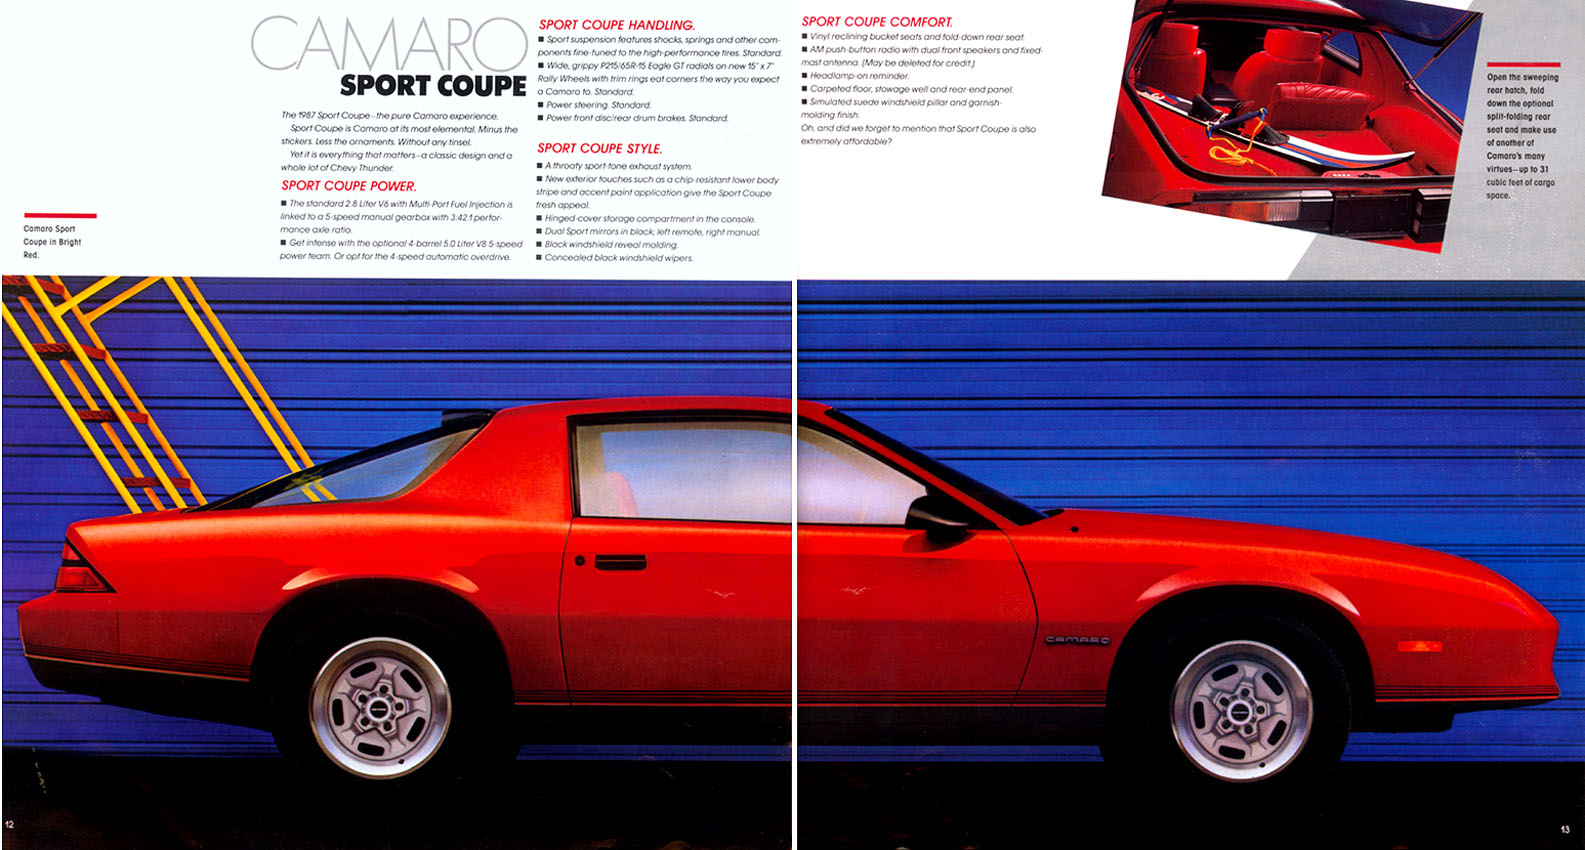 1987 Camaro OEM Brochure (7)